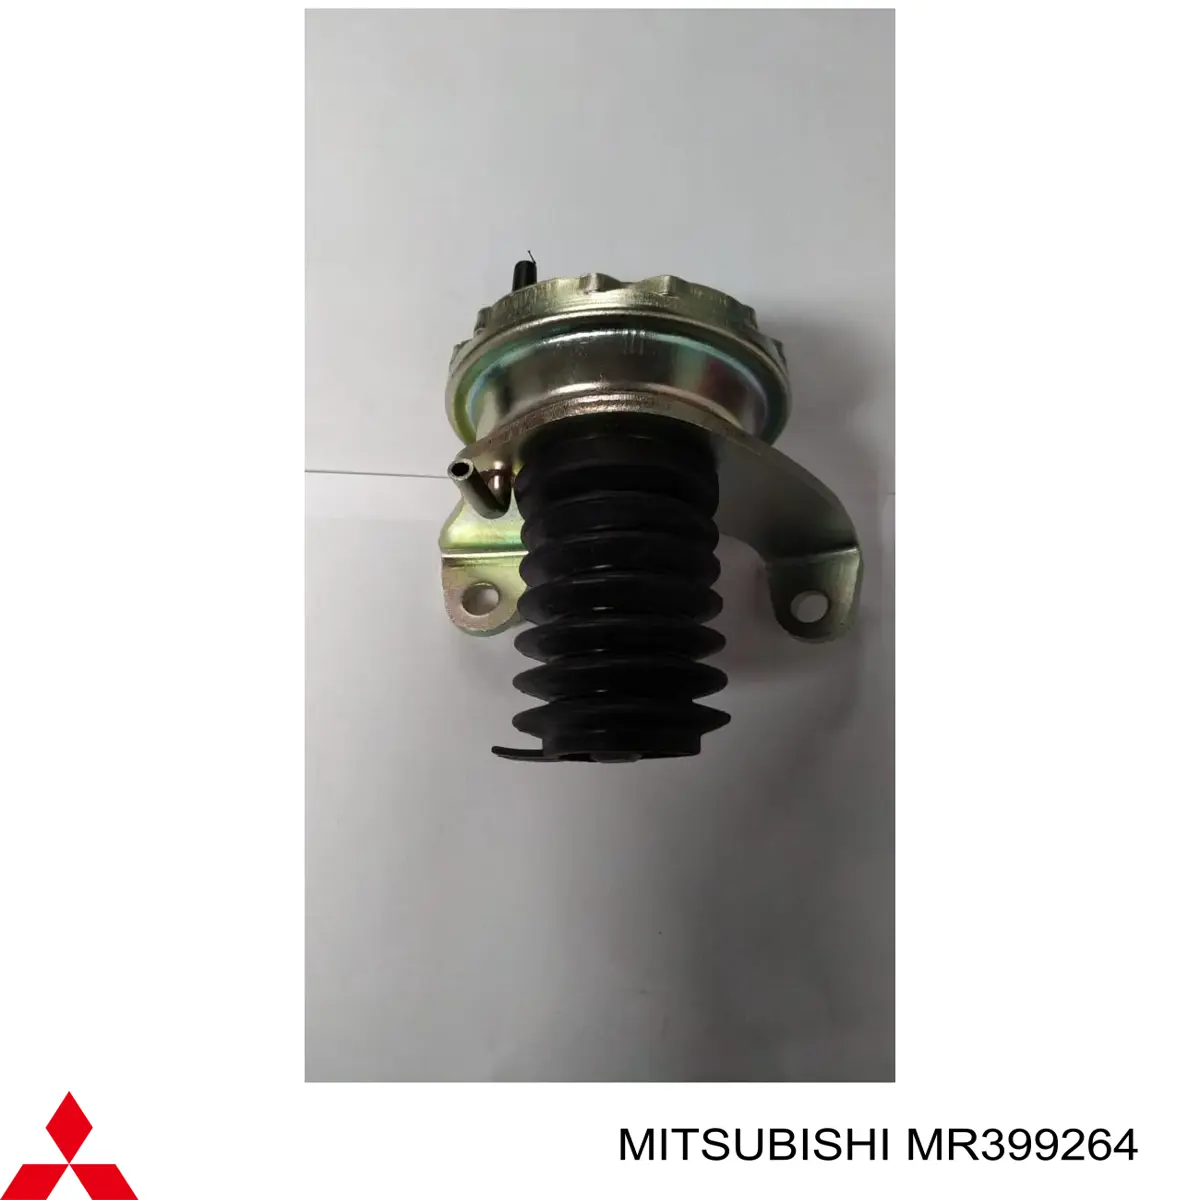 MR399264 Mitsubishi 